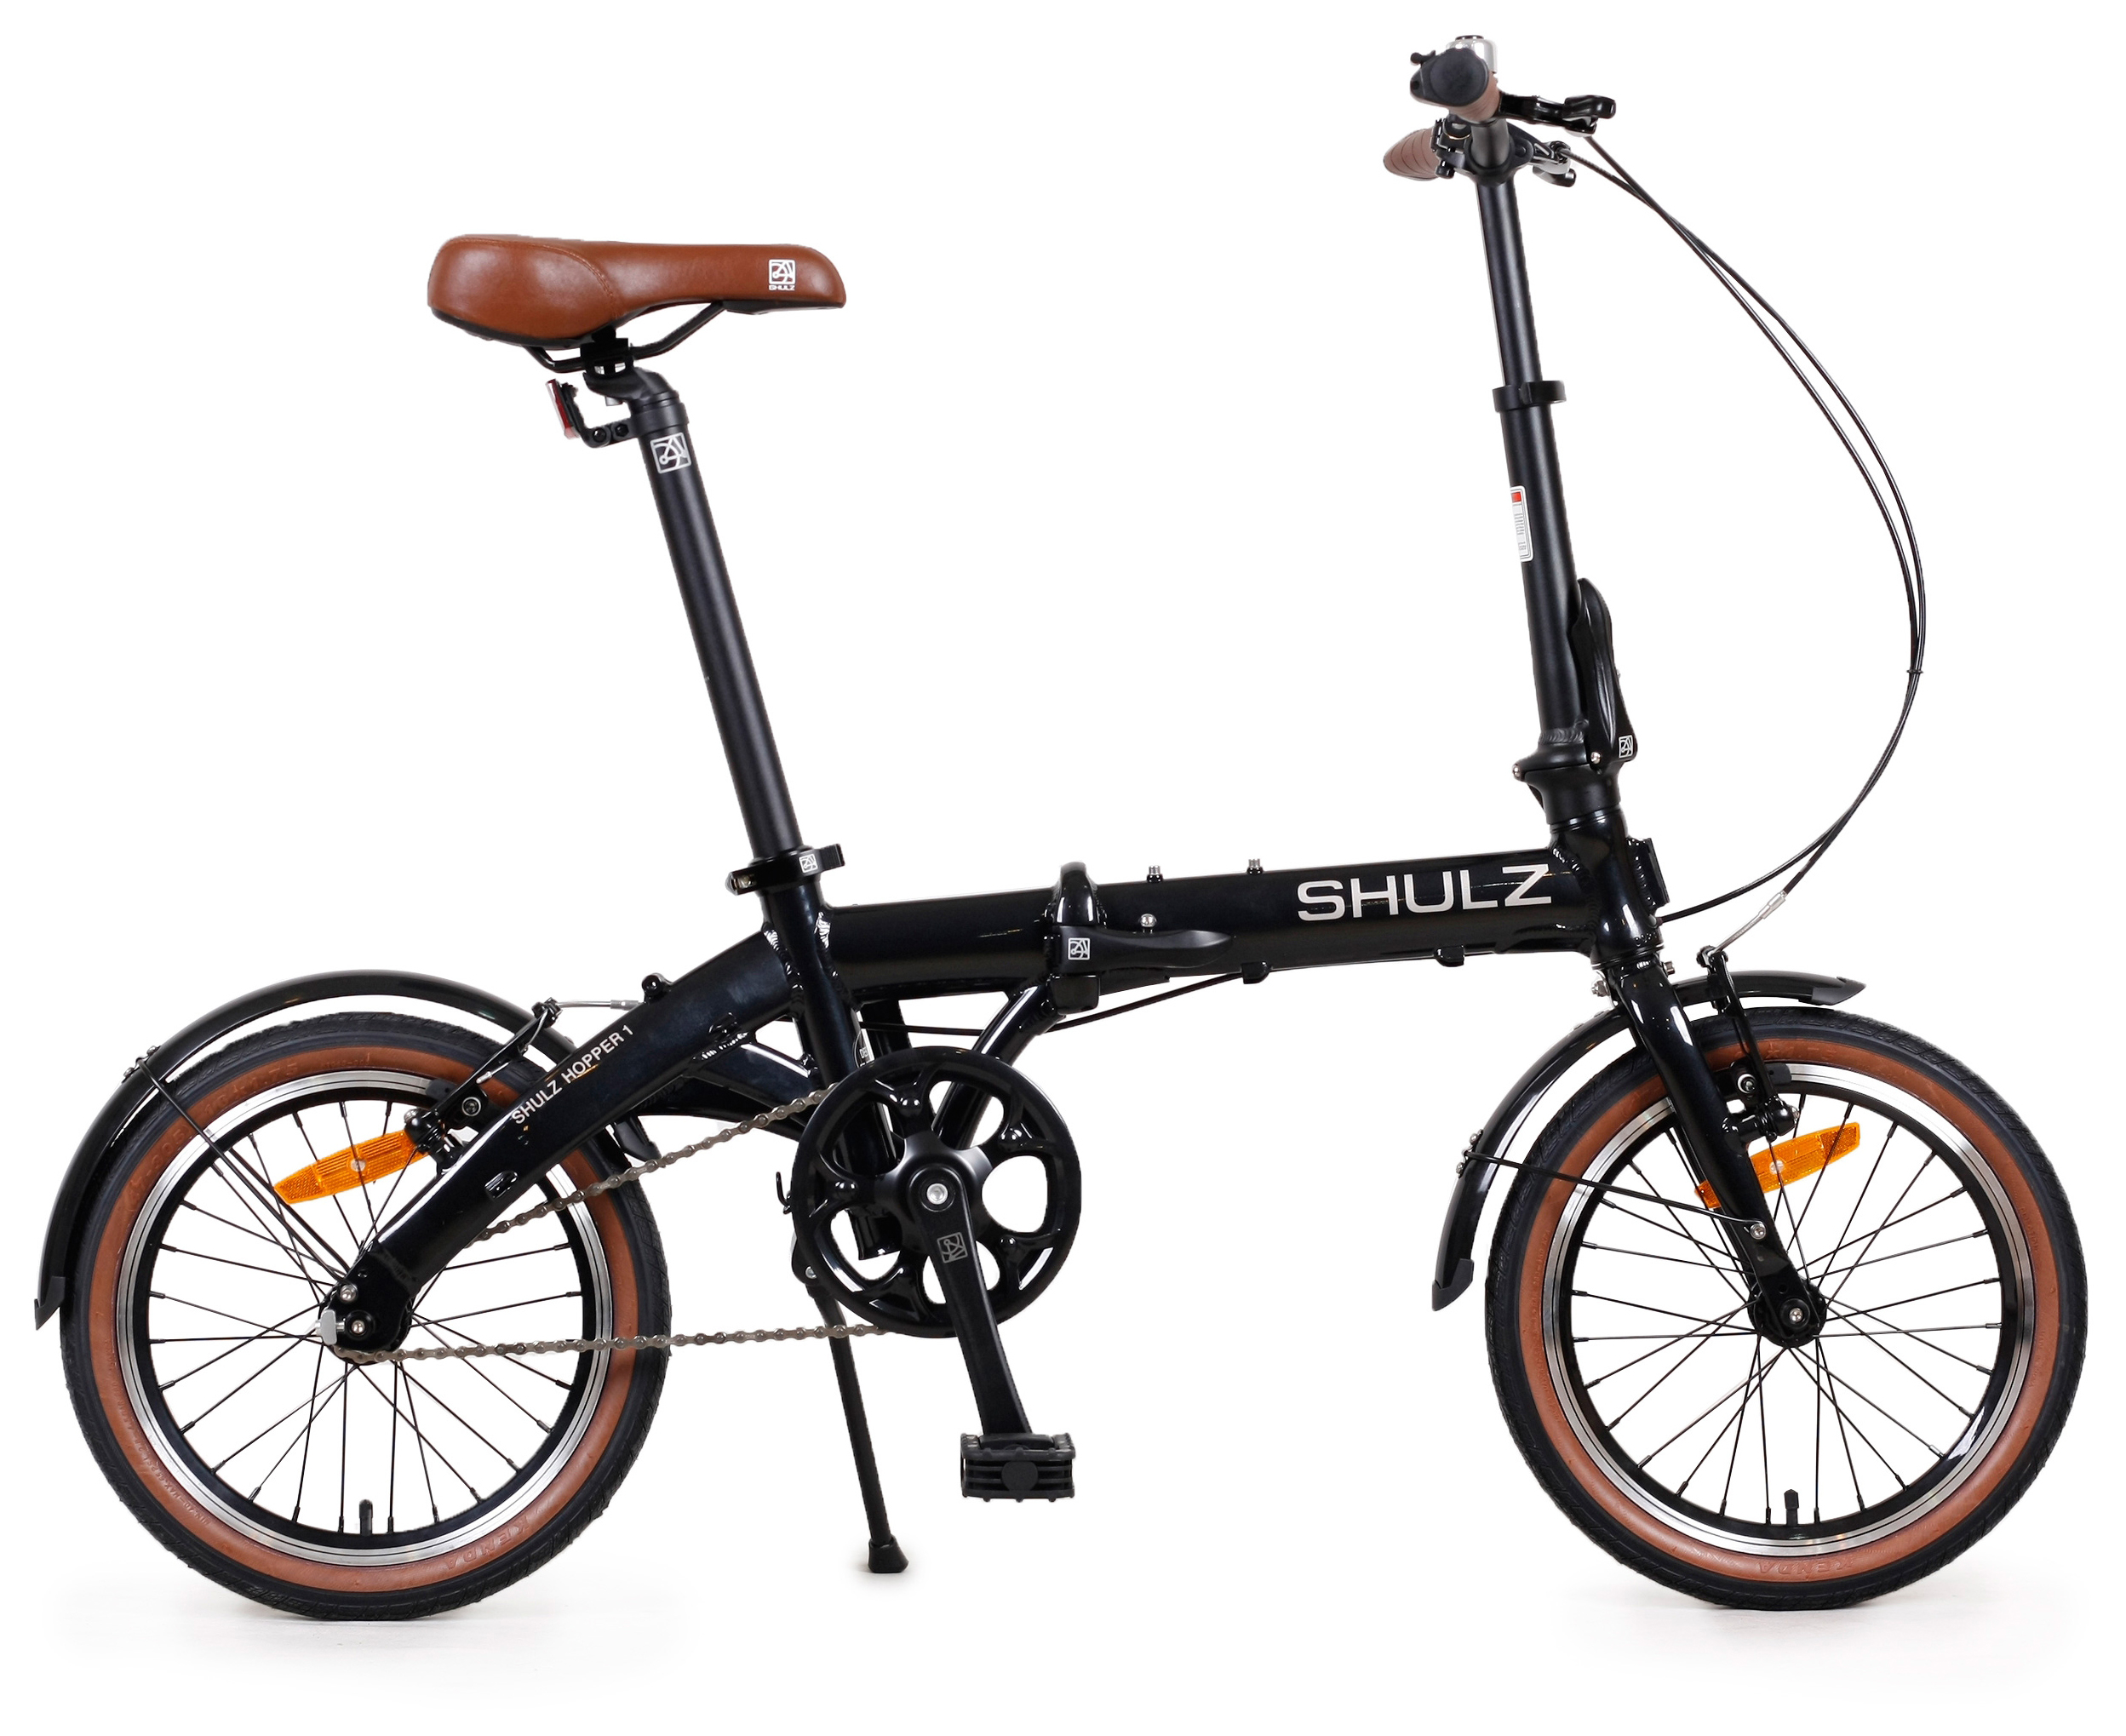  Отзывы о Складном велосипеде Shulz Hopper 2020